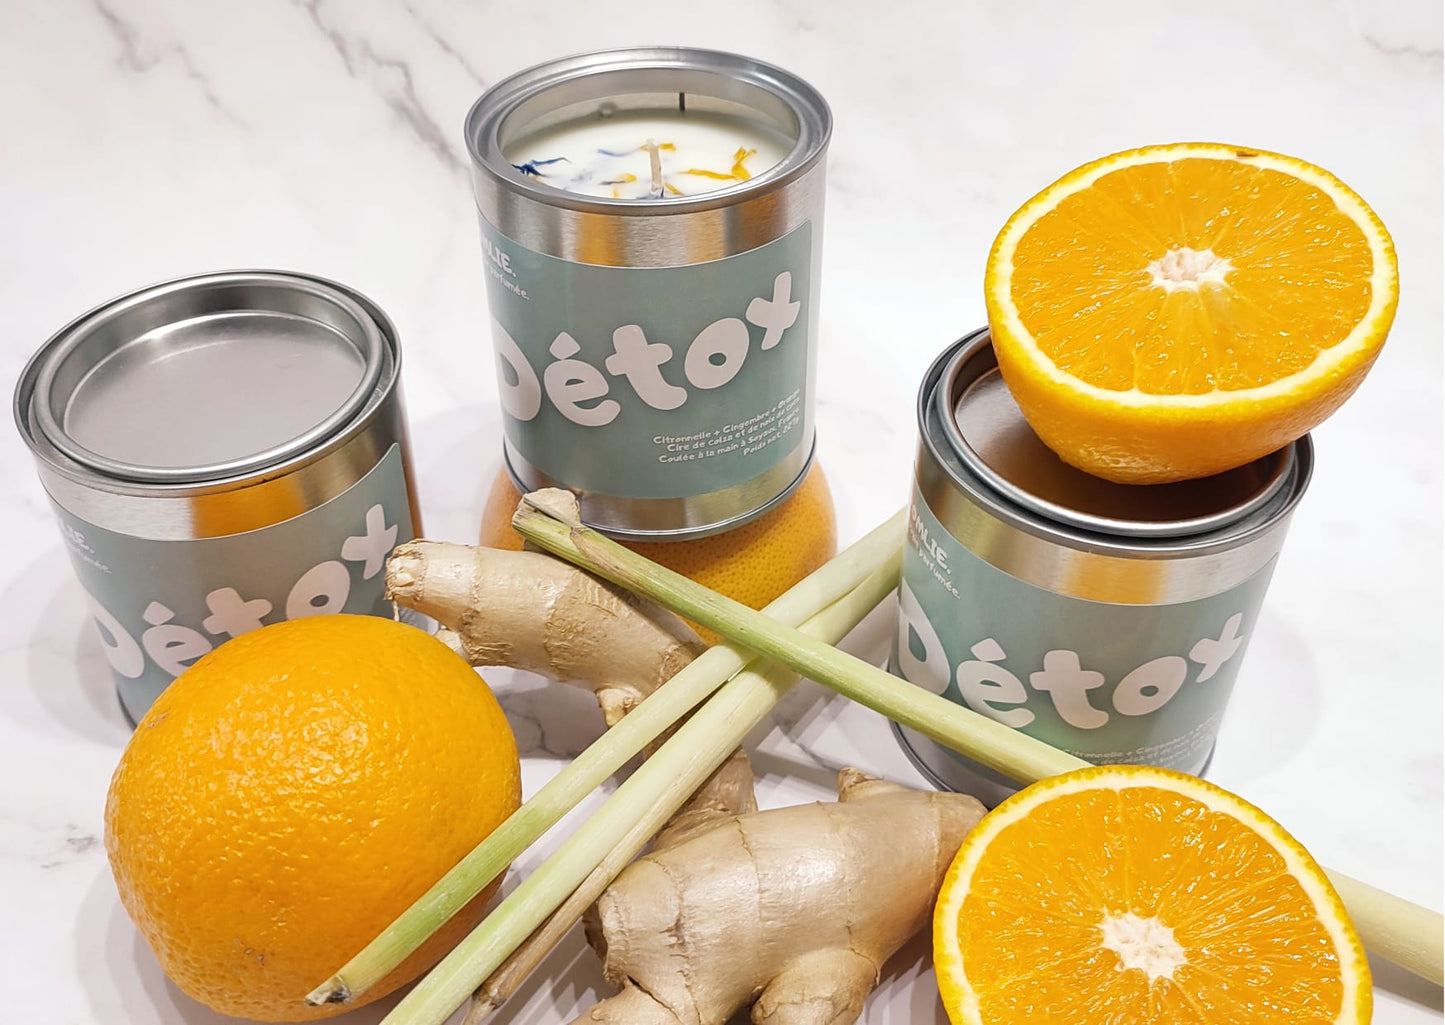 Bougie parfumée Détox à la cire 100% naturelle accompagné de citronnelle, gingembre et oranges.